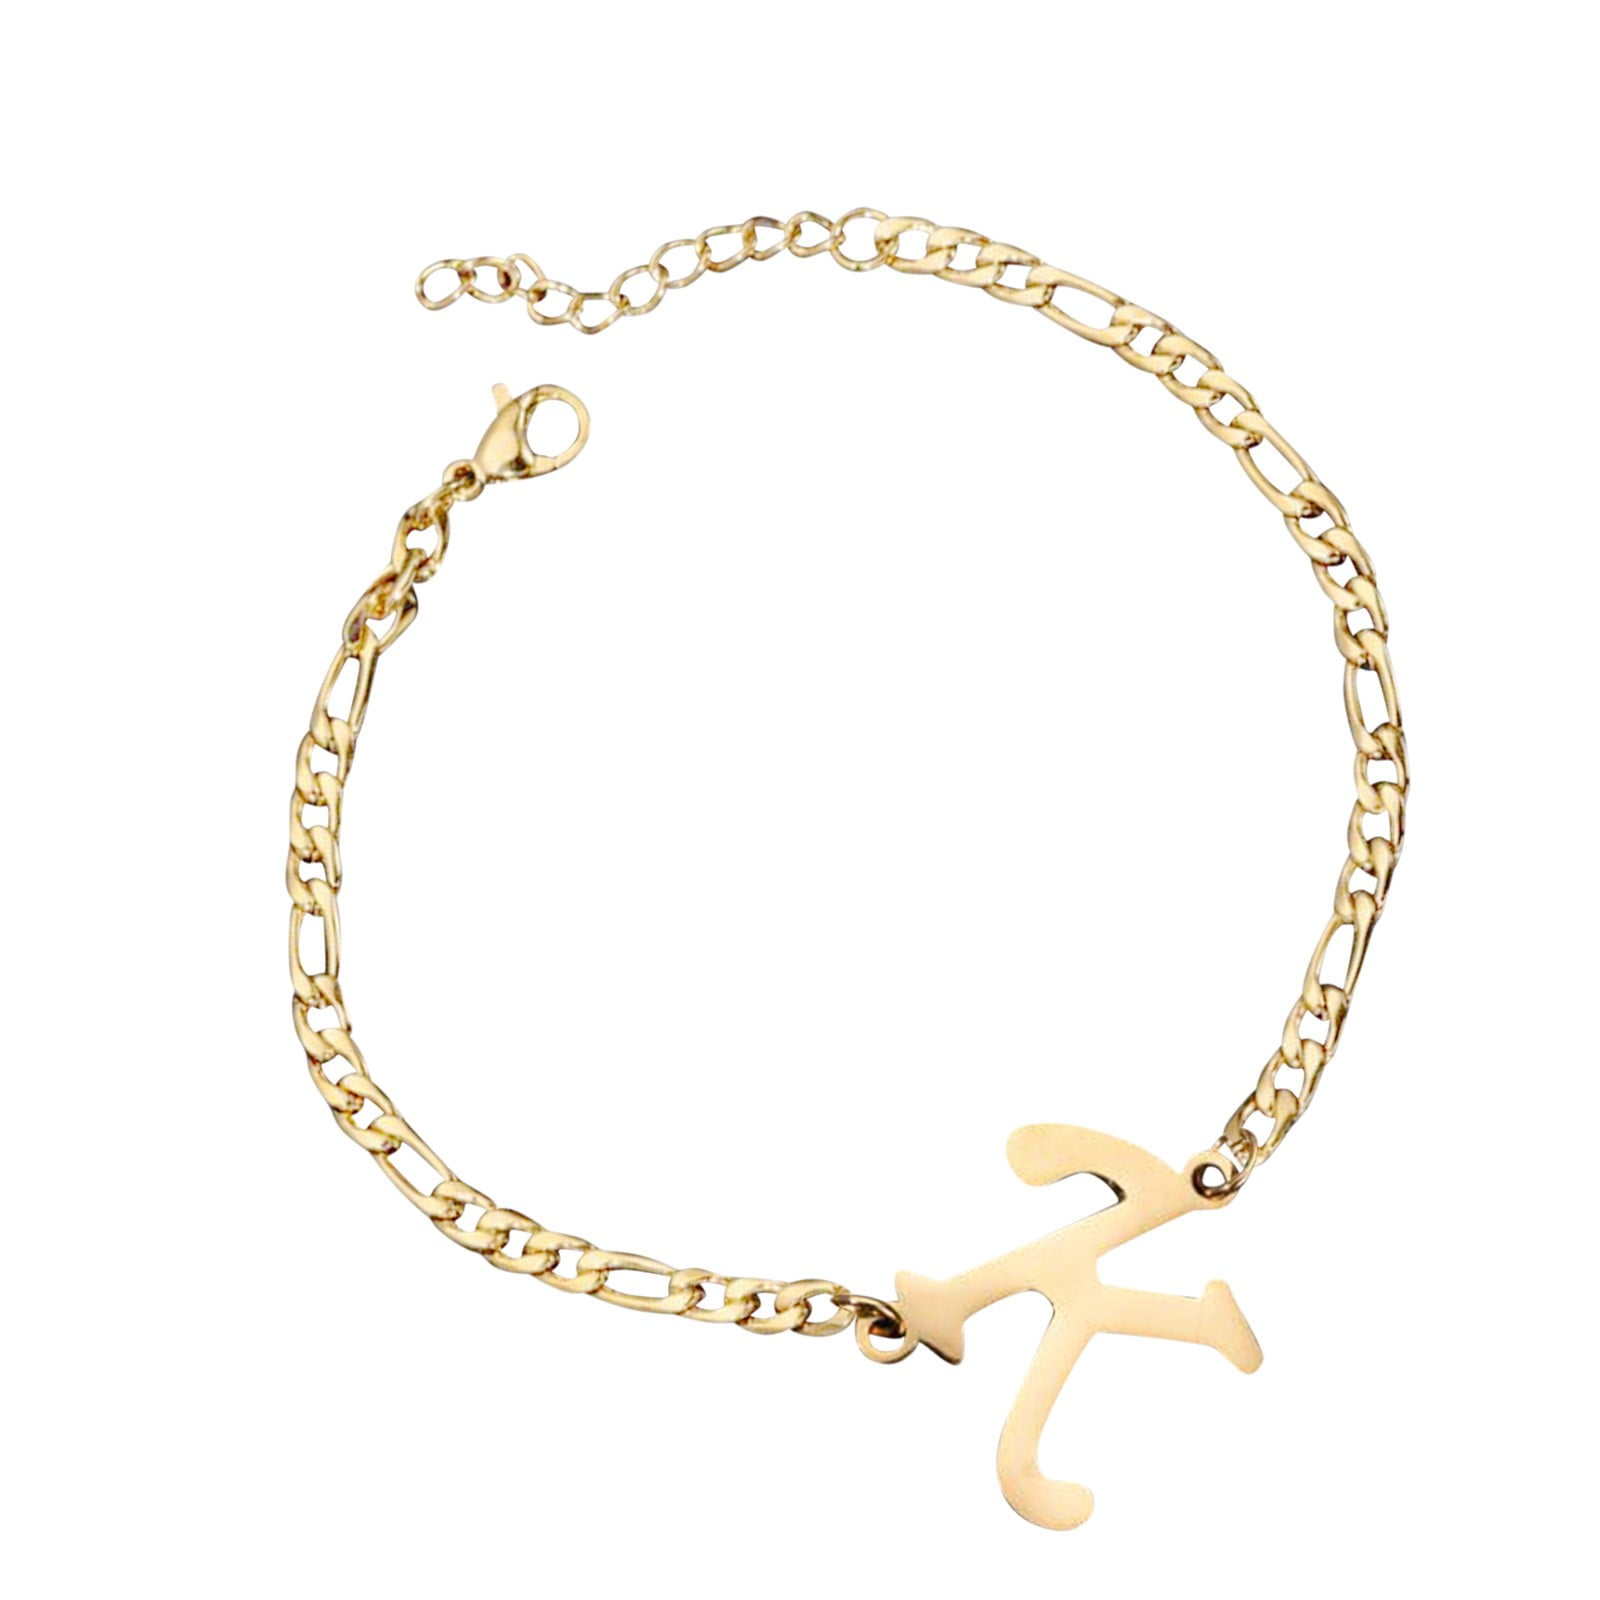 Ski Charm Bracelet, Gift for Skier, Custom Sports Jewelry, Personalized for  Her, Birthstone Initial Bracelet, Gifts for Her, Skiing Gift